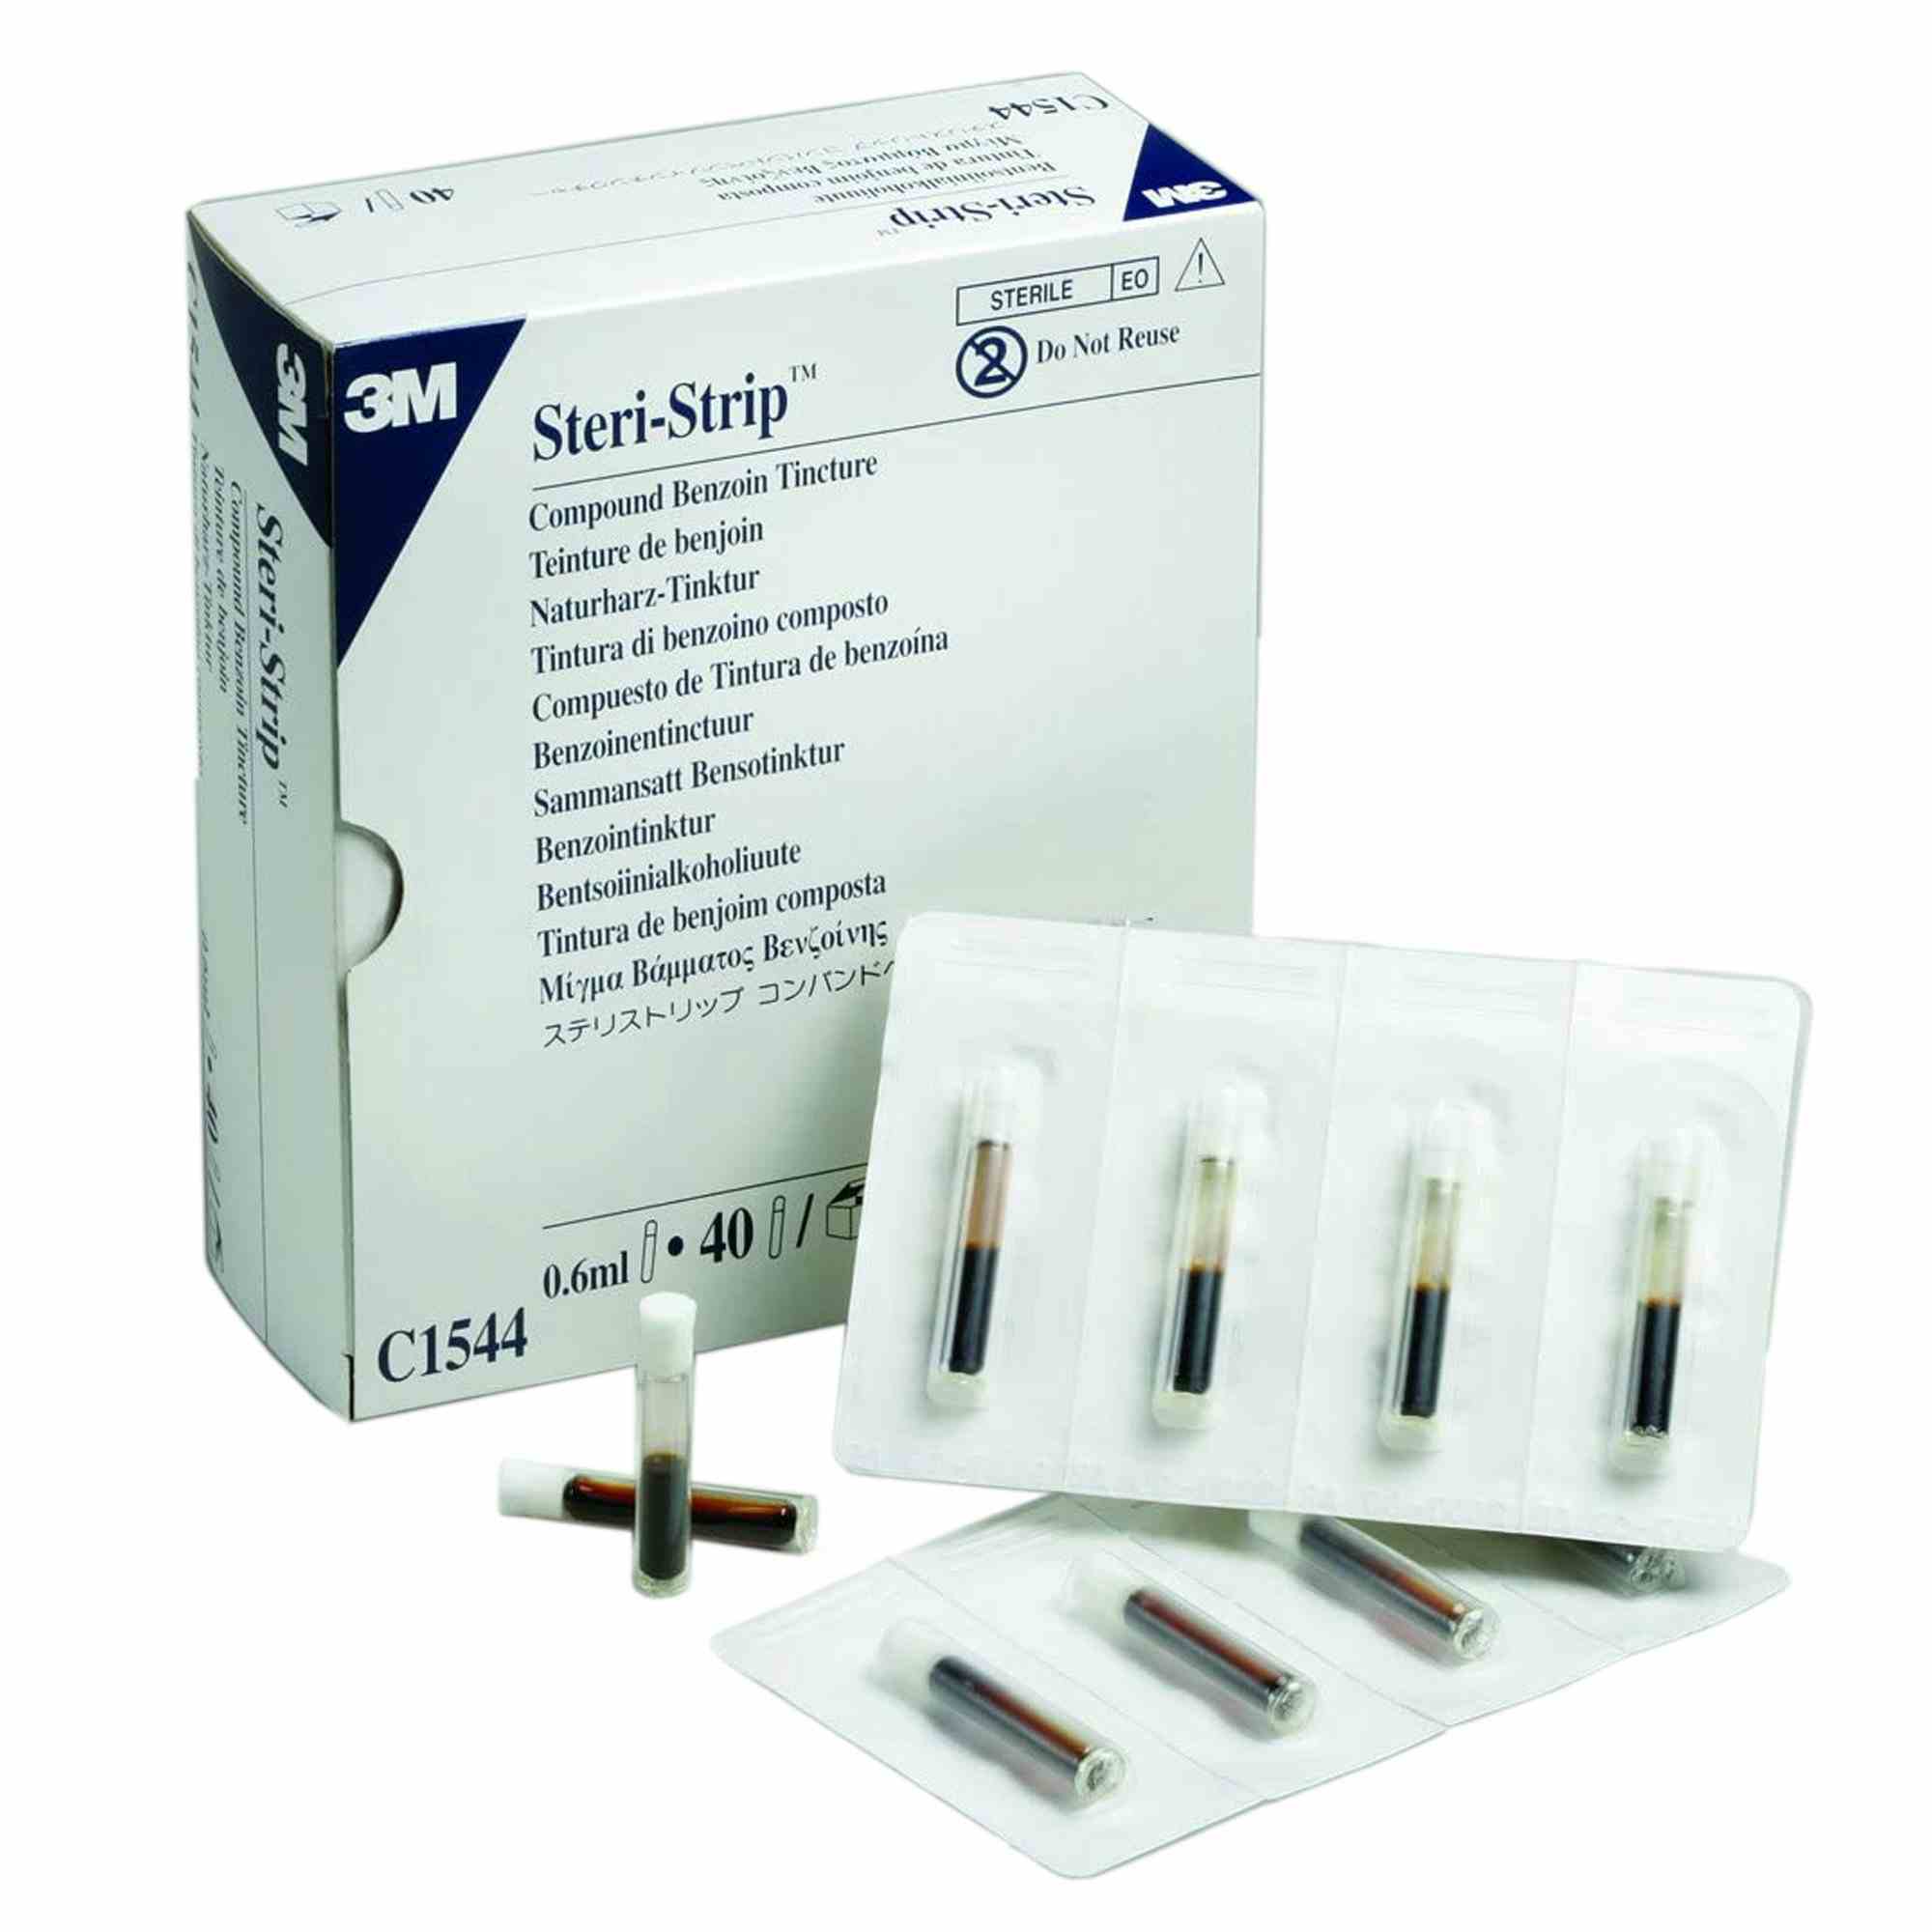 3M Steri-Strip Compound Benzoin Tincture, C1544, Box of 40